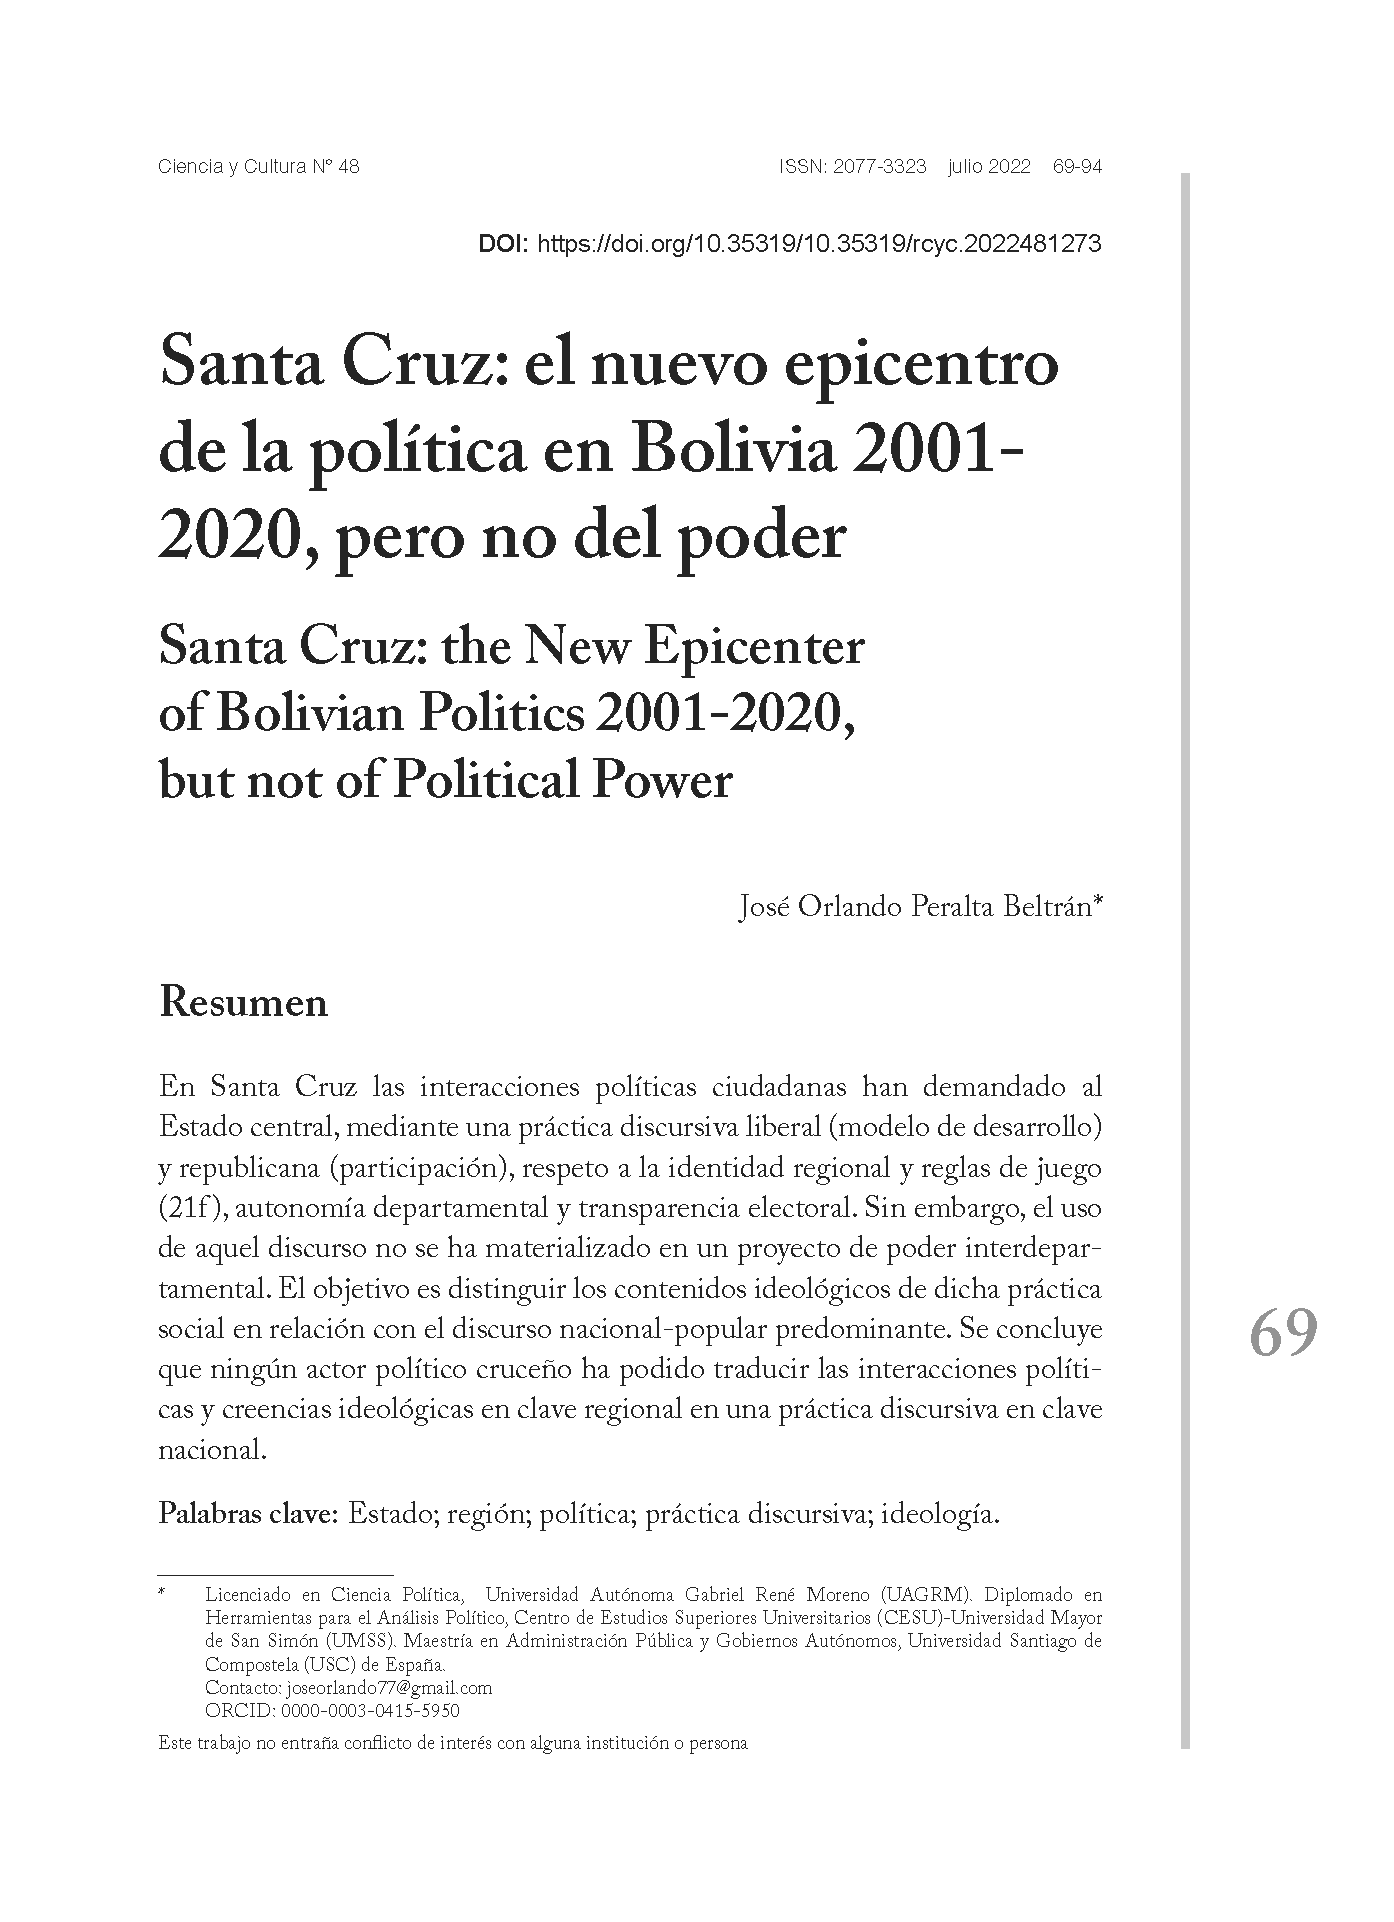 Santa Cruz: el nuevo epicentro de la política en Bolivia 2001- 2020, pero no del poder